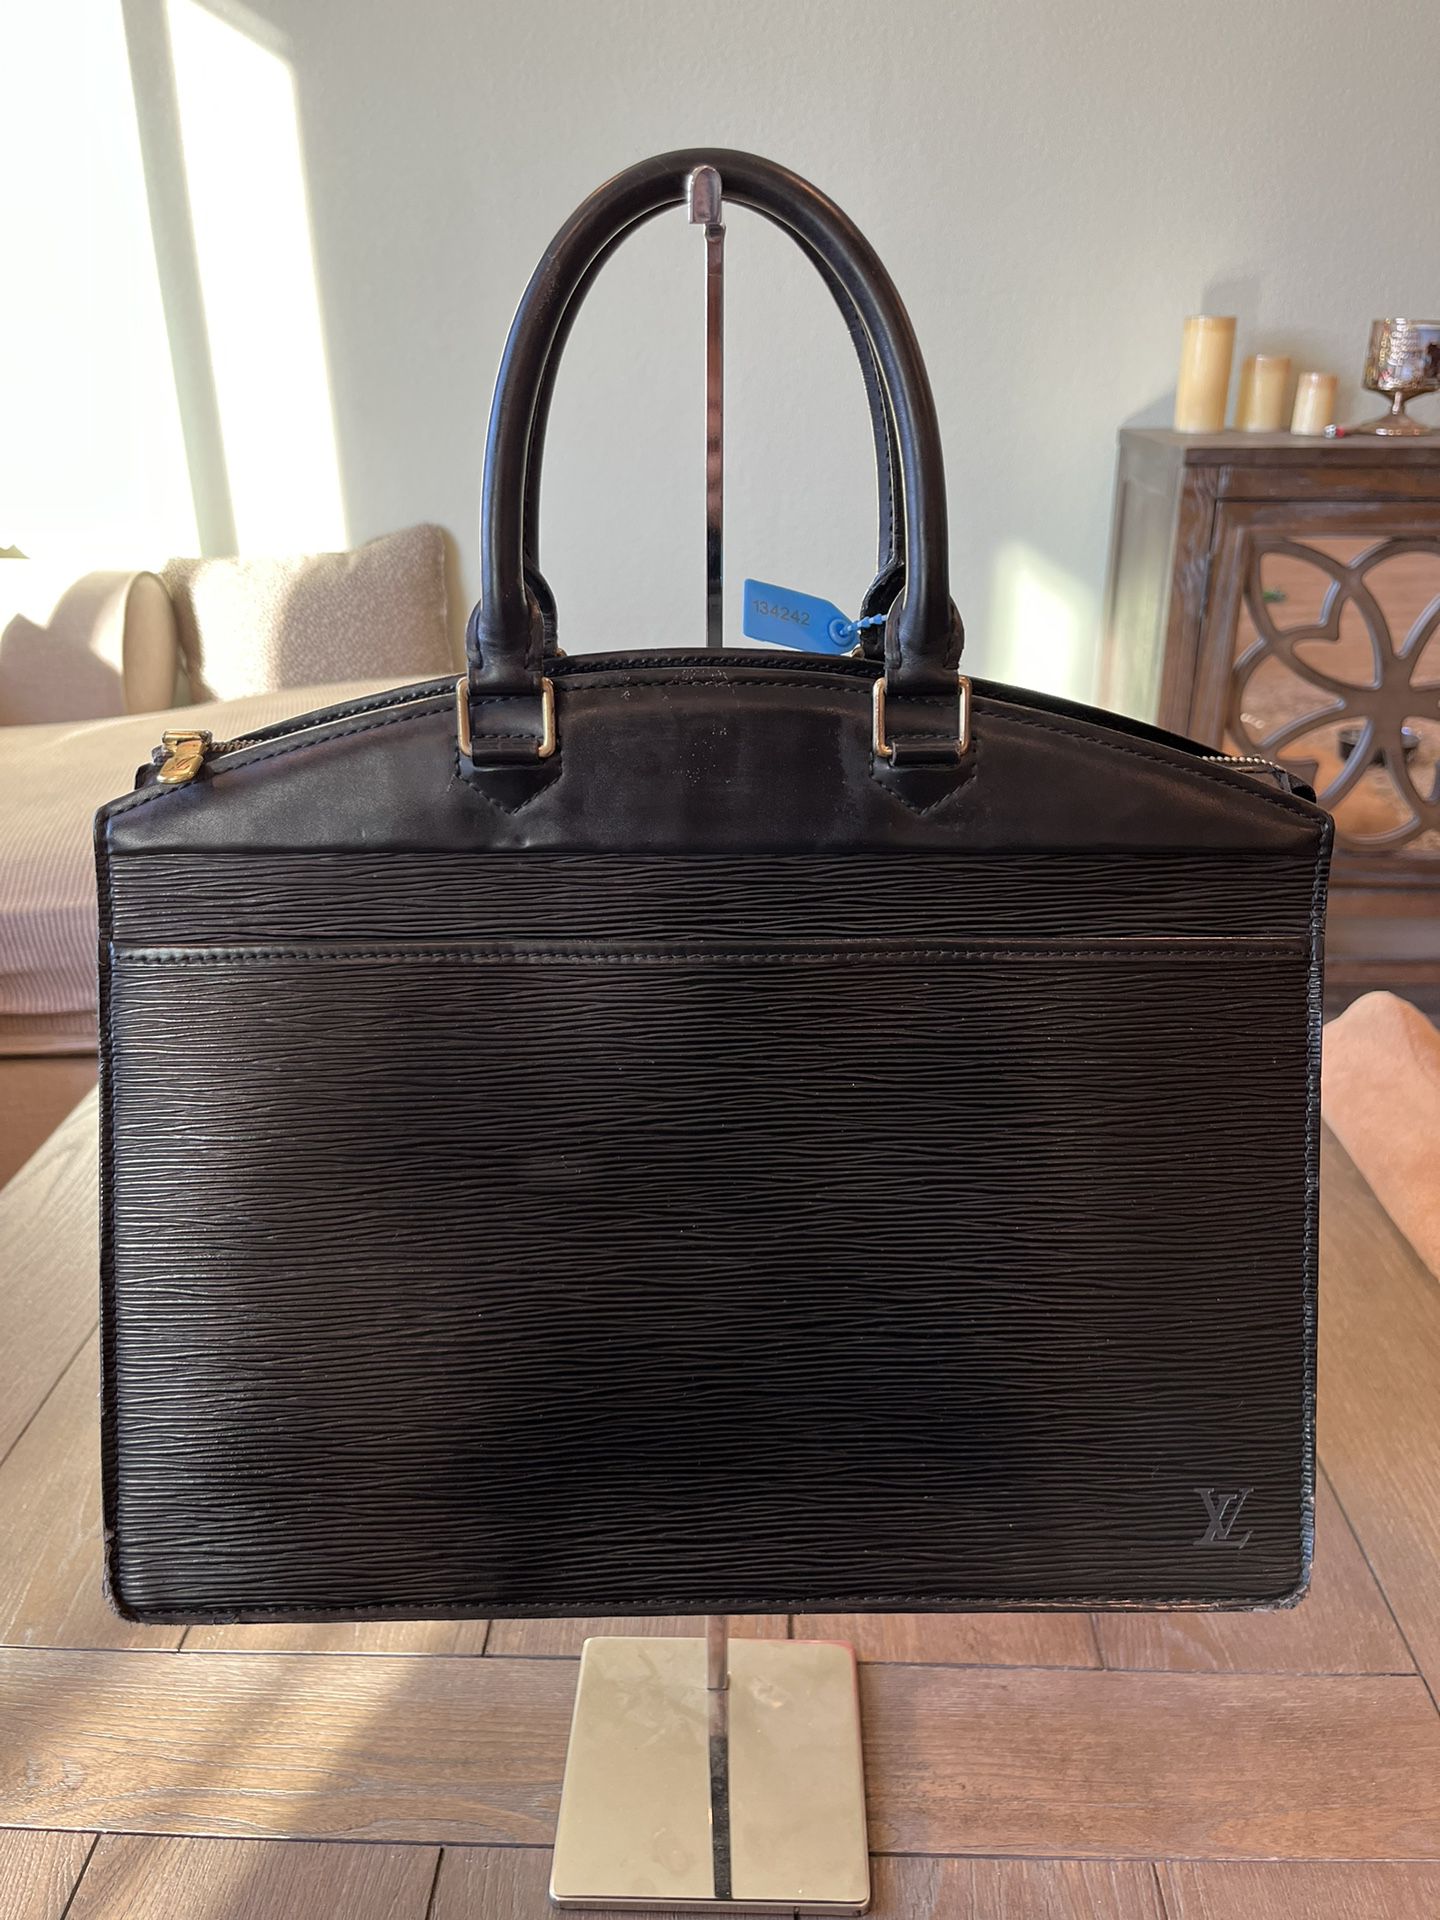 Authentic Louis Vuitton Riveria Black Epi Leather bag